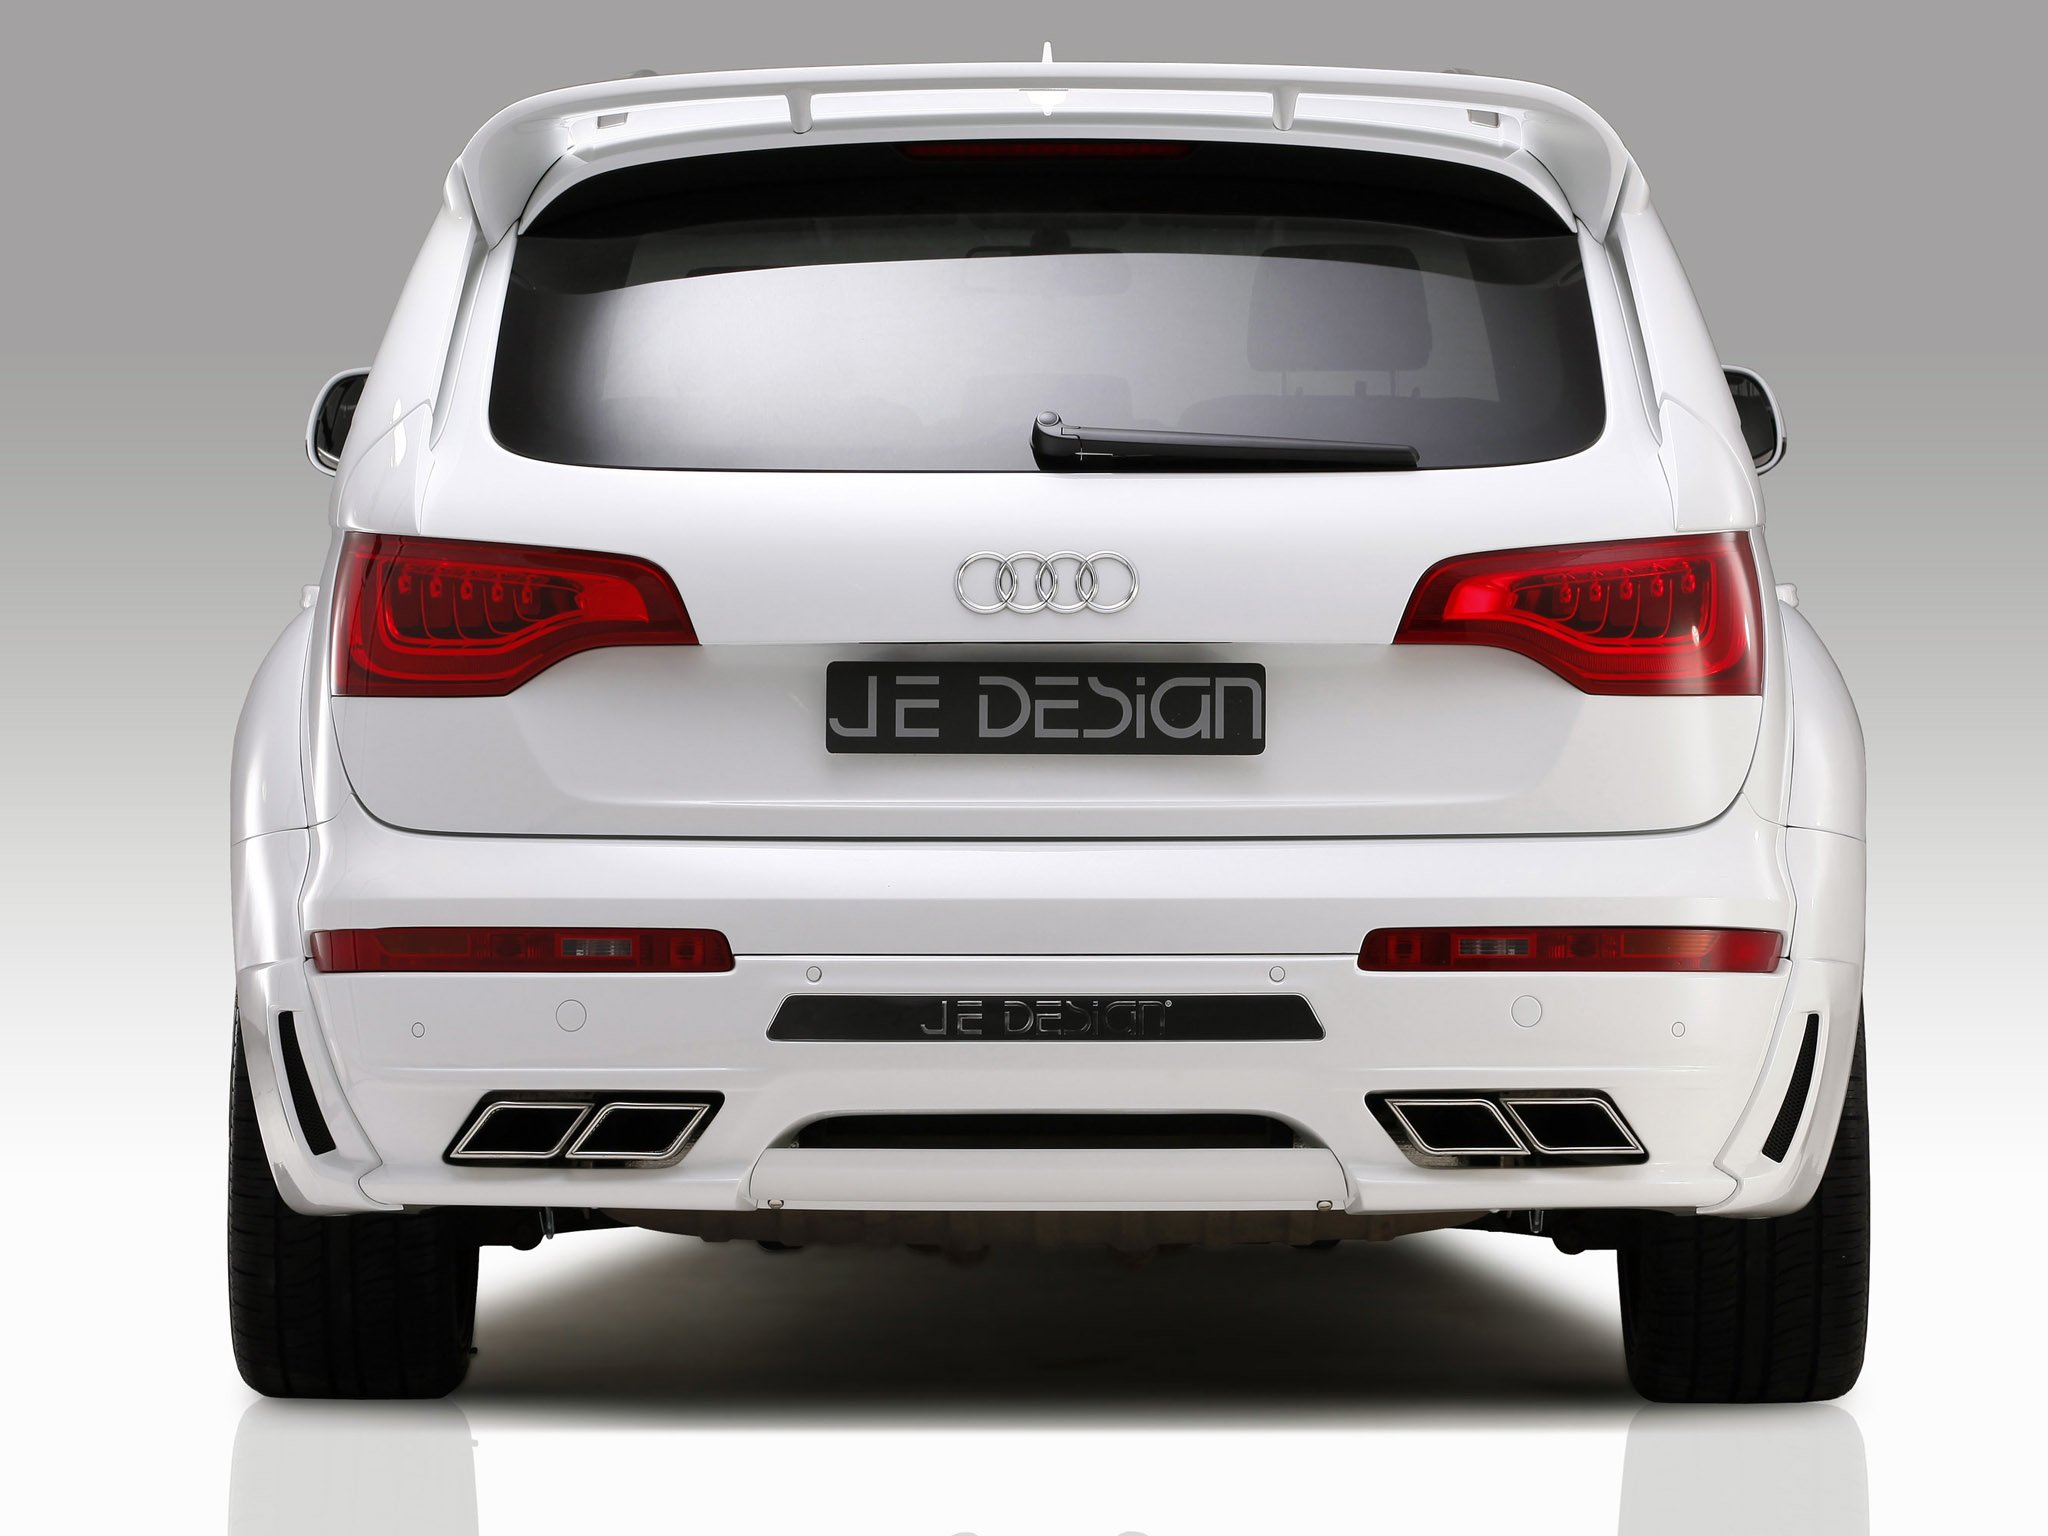 je, Design, Audi q7, S line, Cars, Modified, 2011 Wallpaper